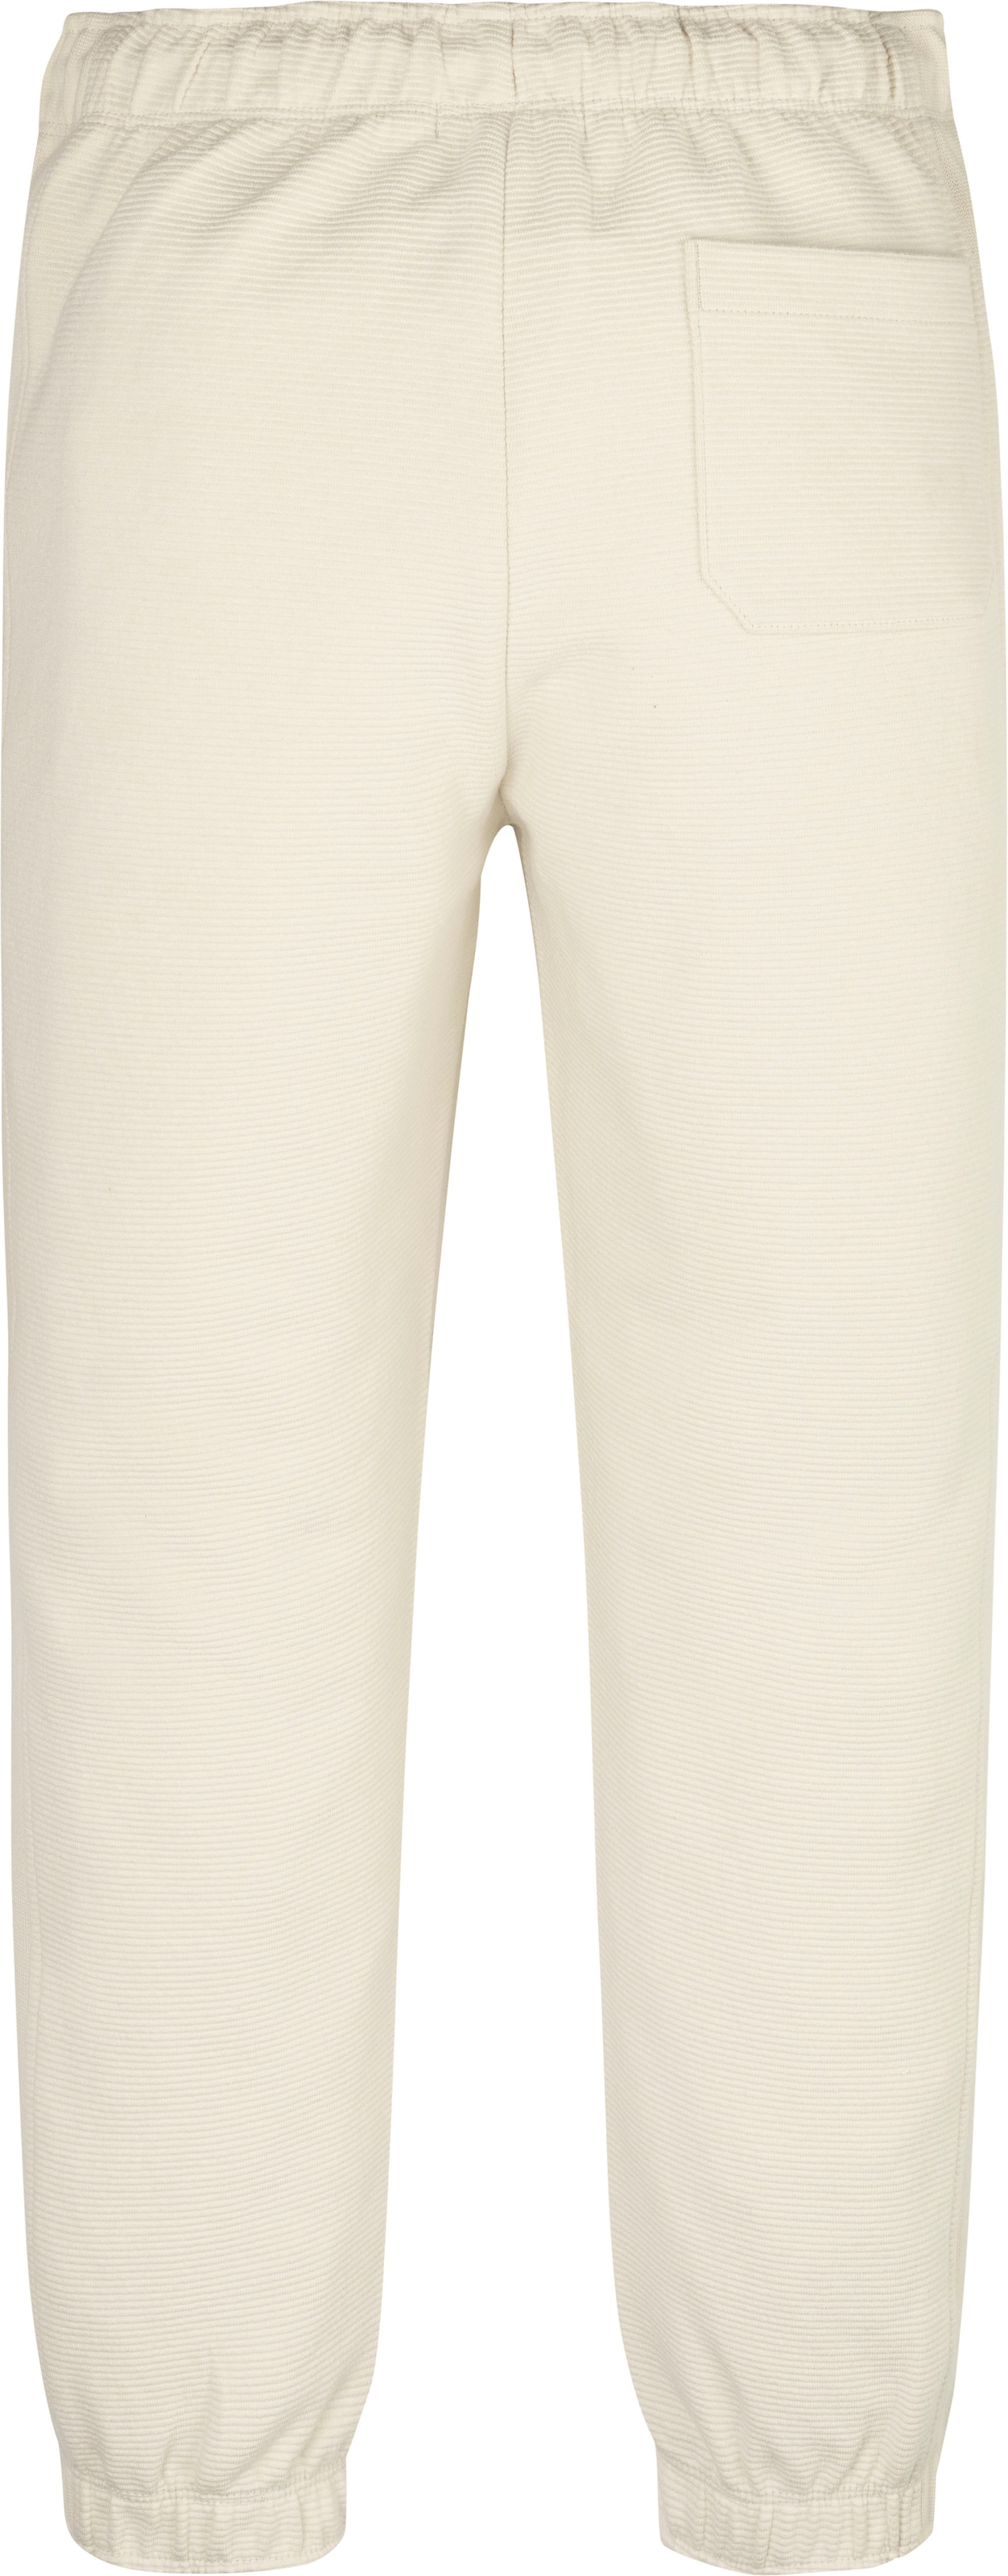 Modische Calvin Klein Jeans Sweathose »TEXTURED BADGE SWEATPANTS« ohne  Mindestbestellwert bestellen